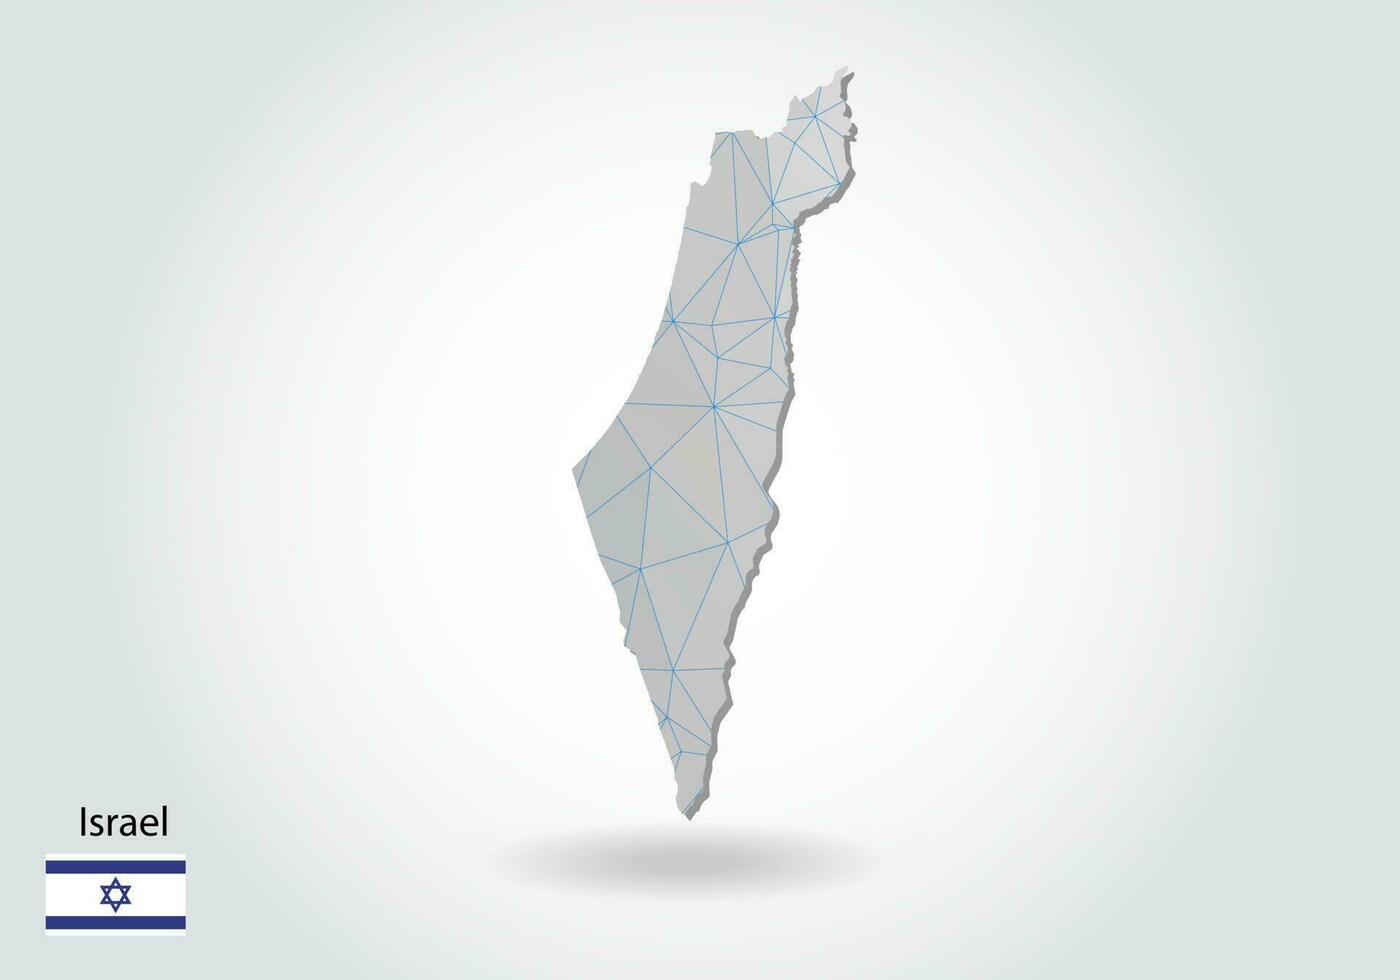 vektor karta över israel med trendiga trianglar design i polygonal stil på mörk bakgrund, kartform i modern 3d papperssnitt konst stil. skiktad pappersutskärningsdesign.